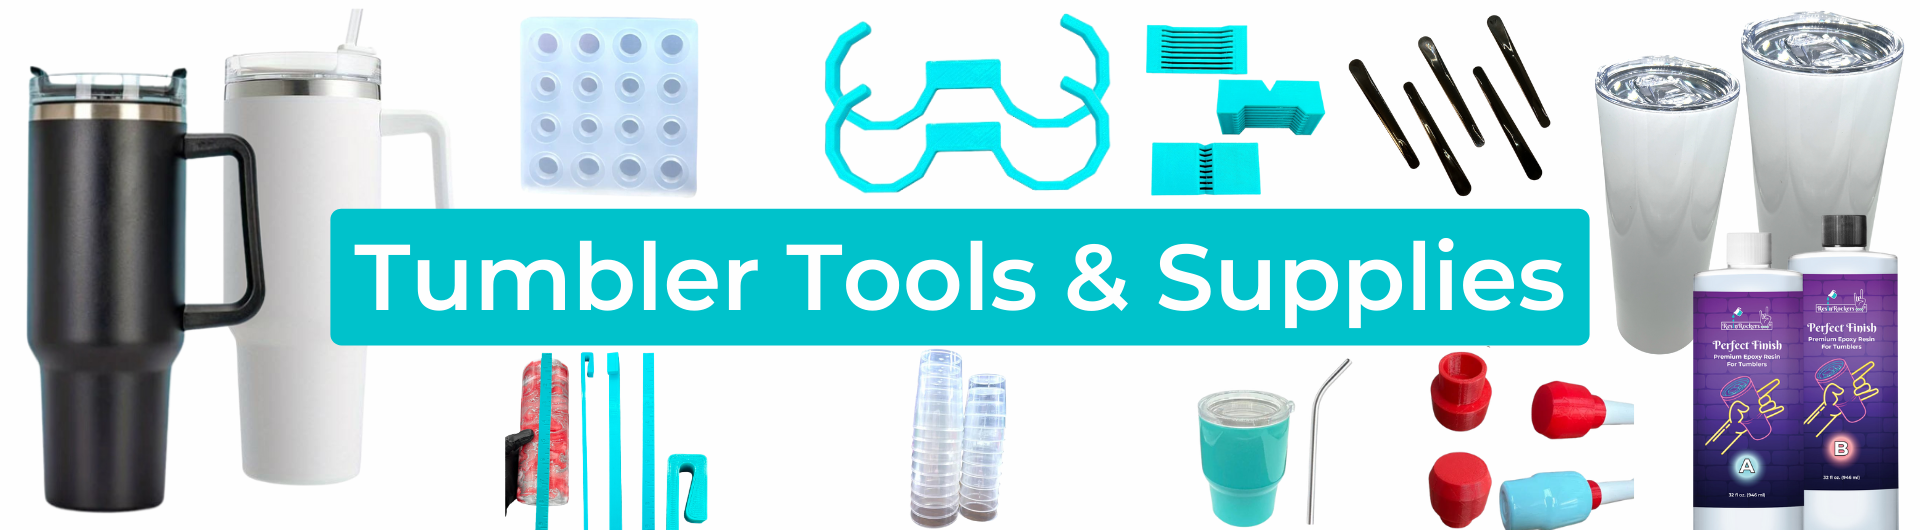 Tumbler Tools & Supplies